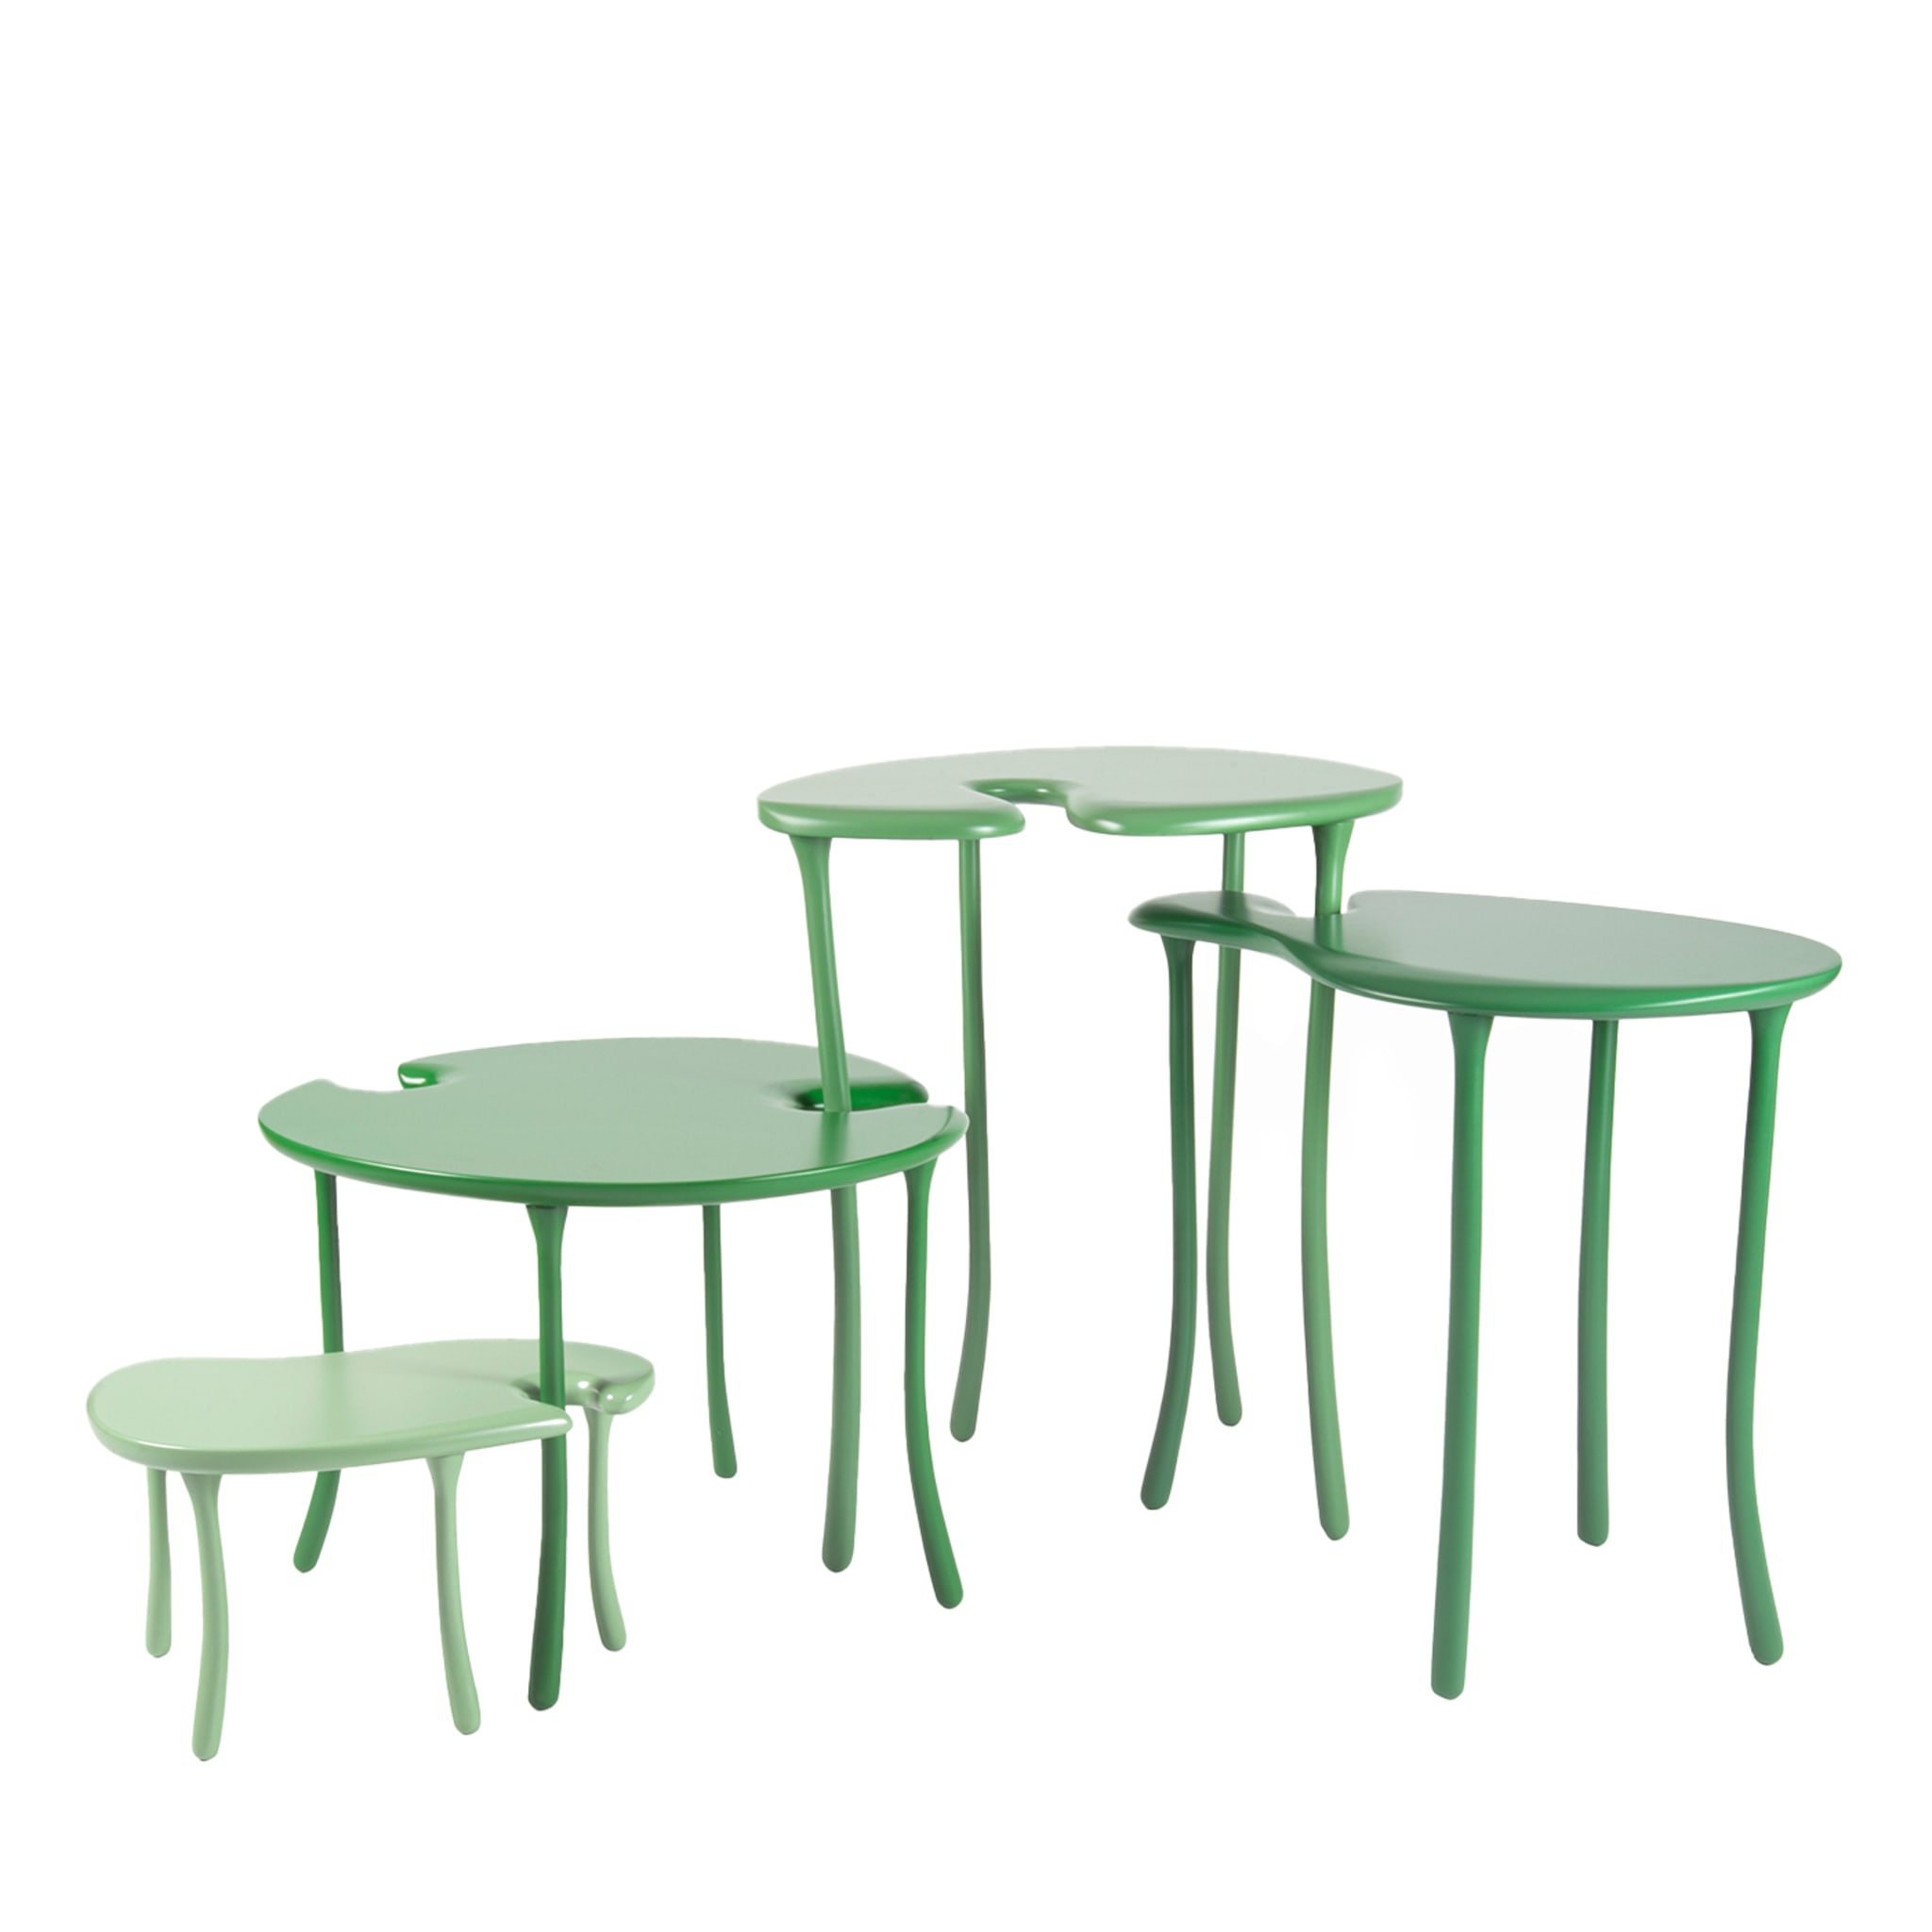 Tavo B1 Modulares Set aus 4 grünen Couchtischen Limited Edition - Hauptansicht